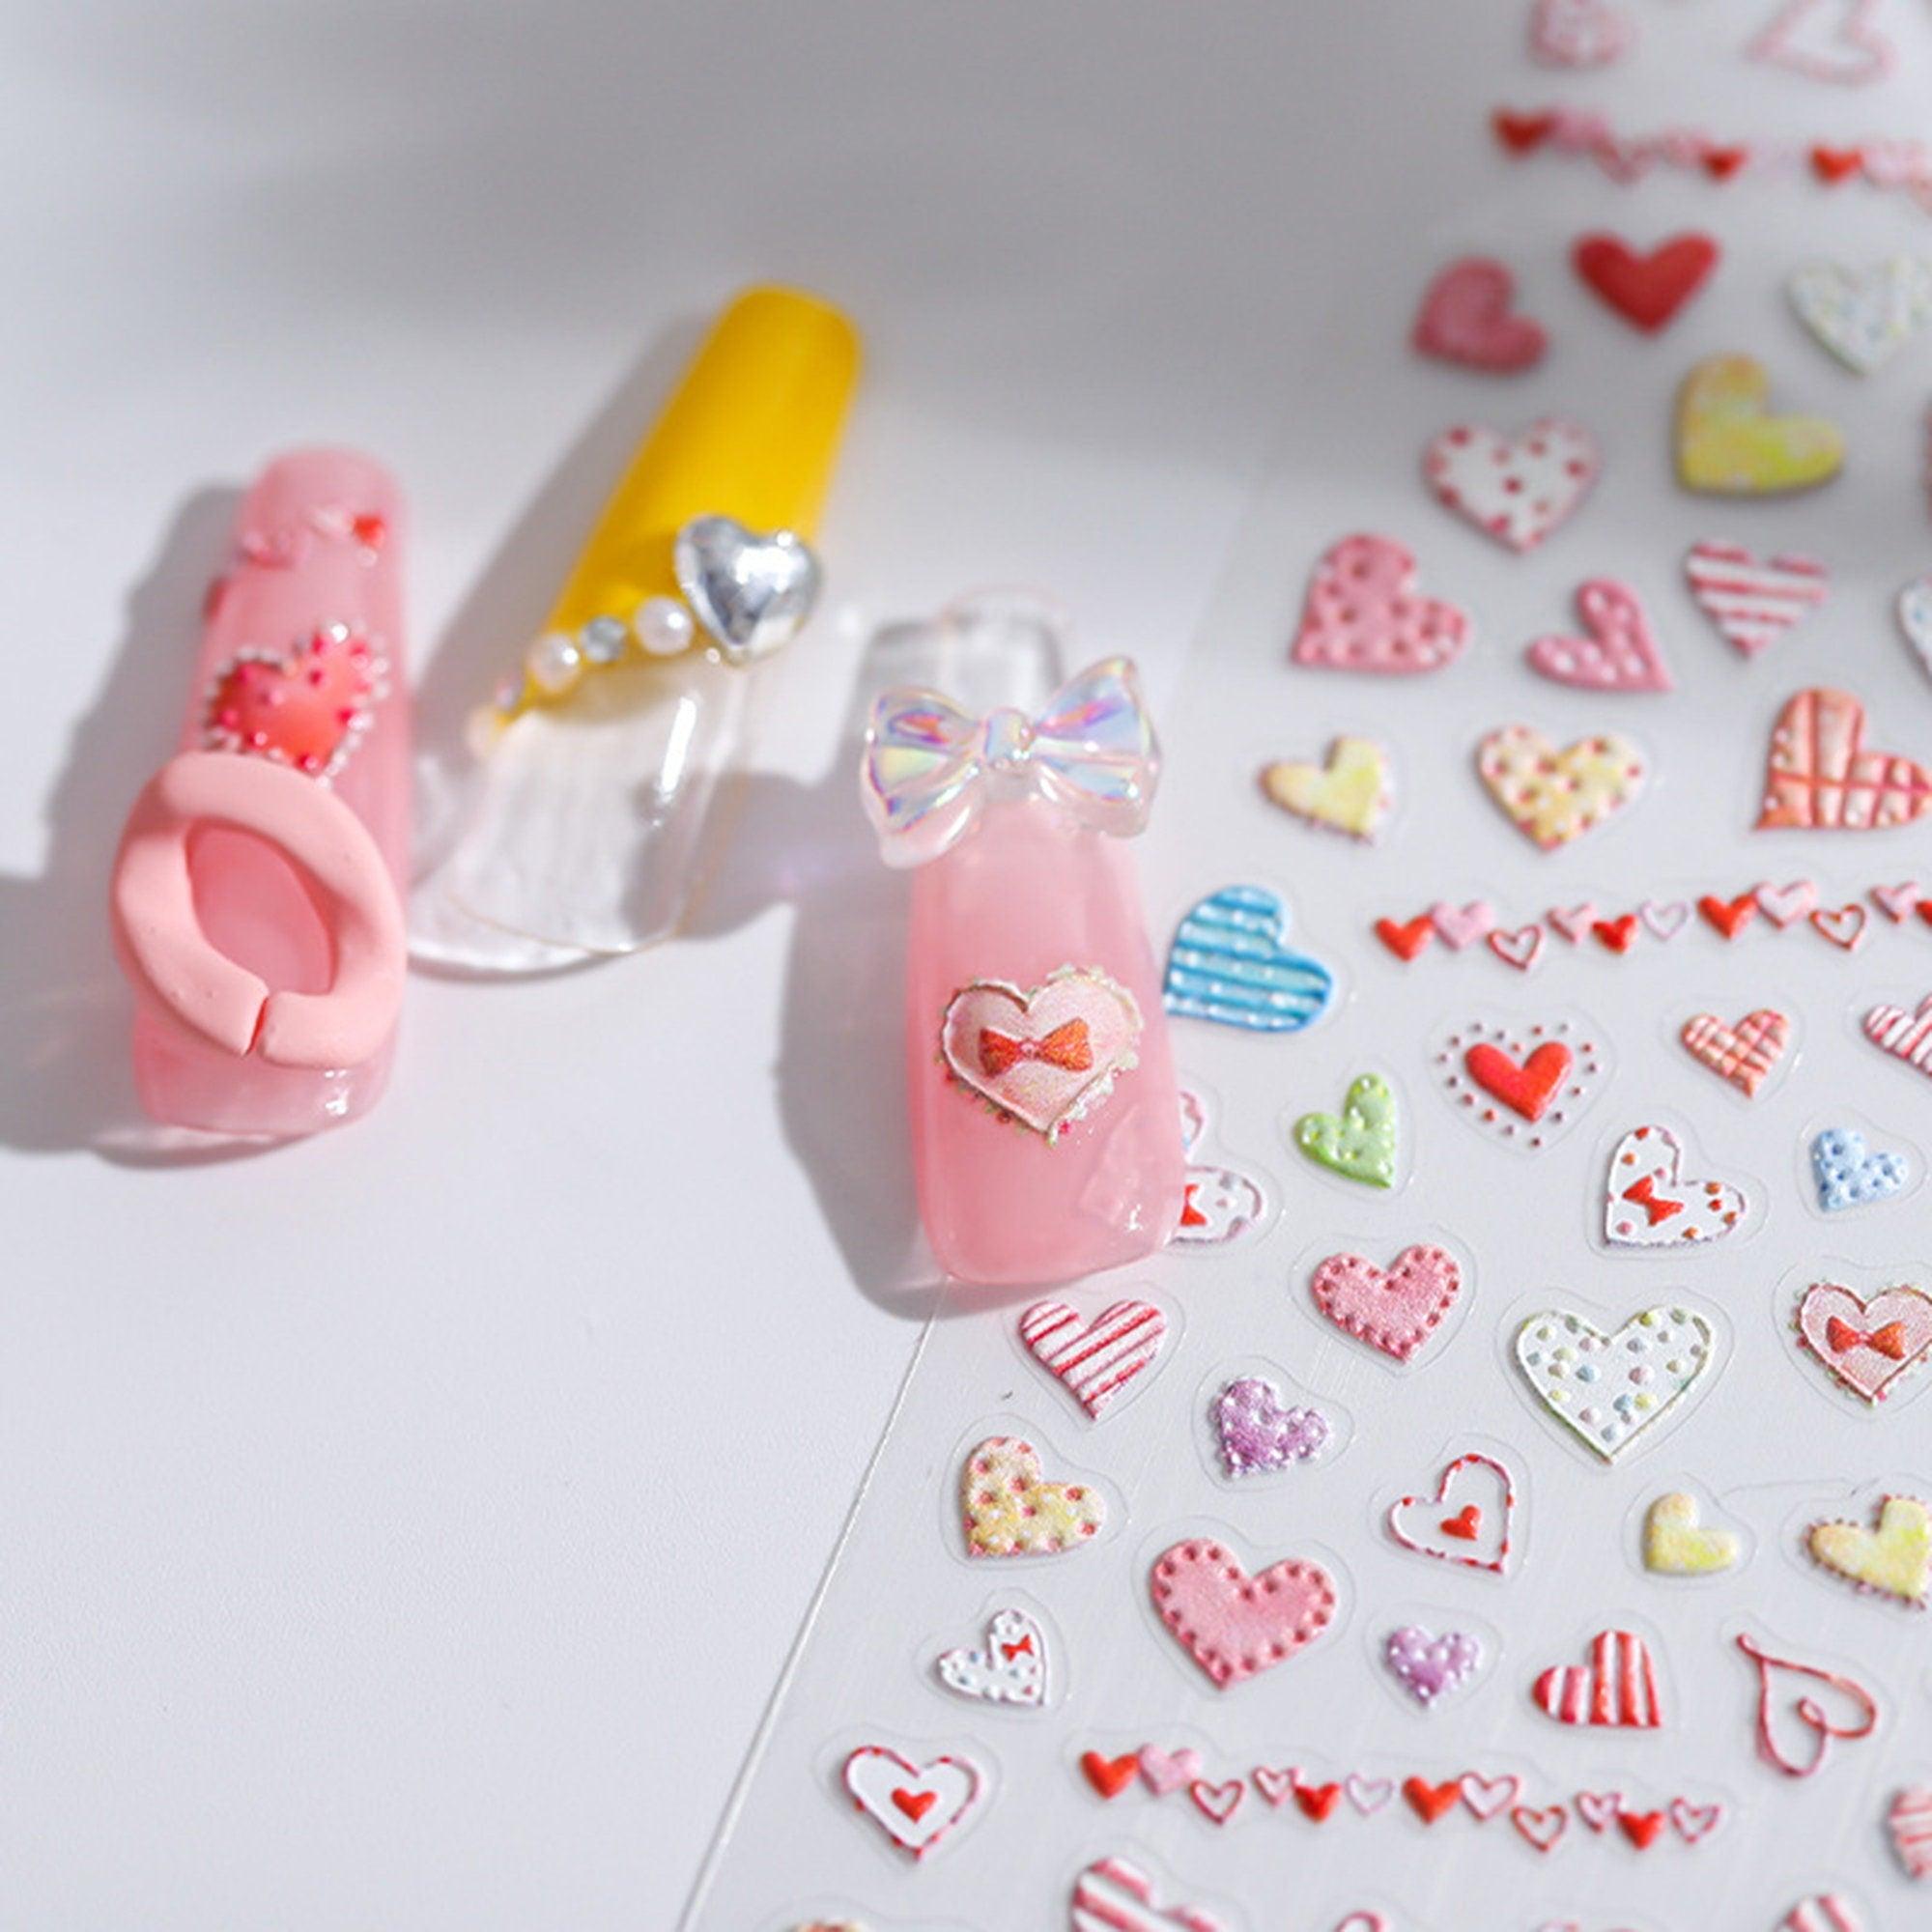 Heart Nail Stickers, Heart Nail Decals, Kawaii Heart Nail Designs, Nail Decal Art, 3D Nail Stickers, DIY Nails - Miss Fairy Nails